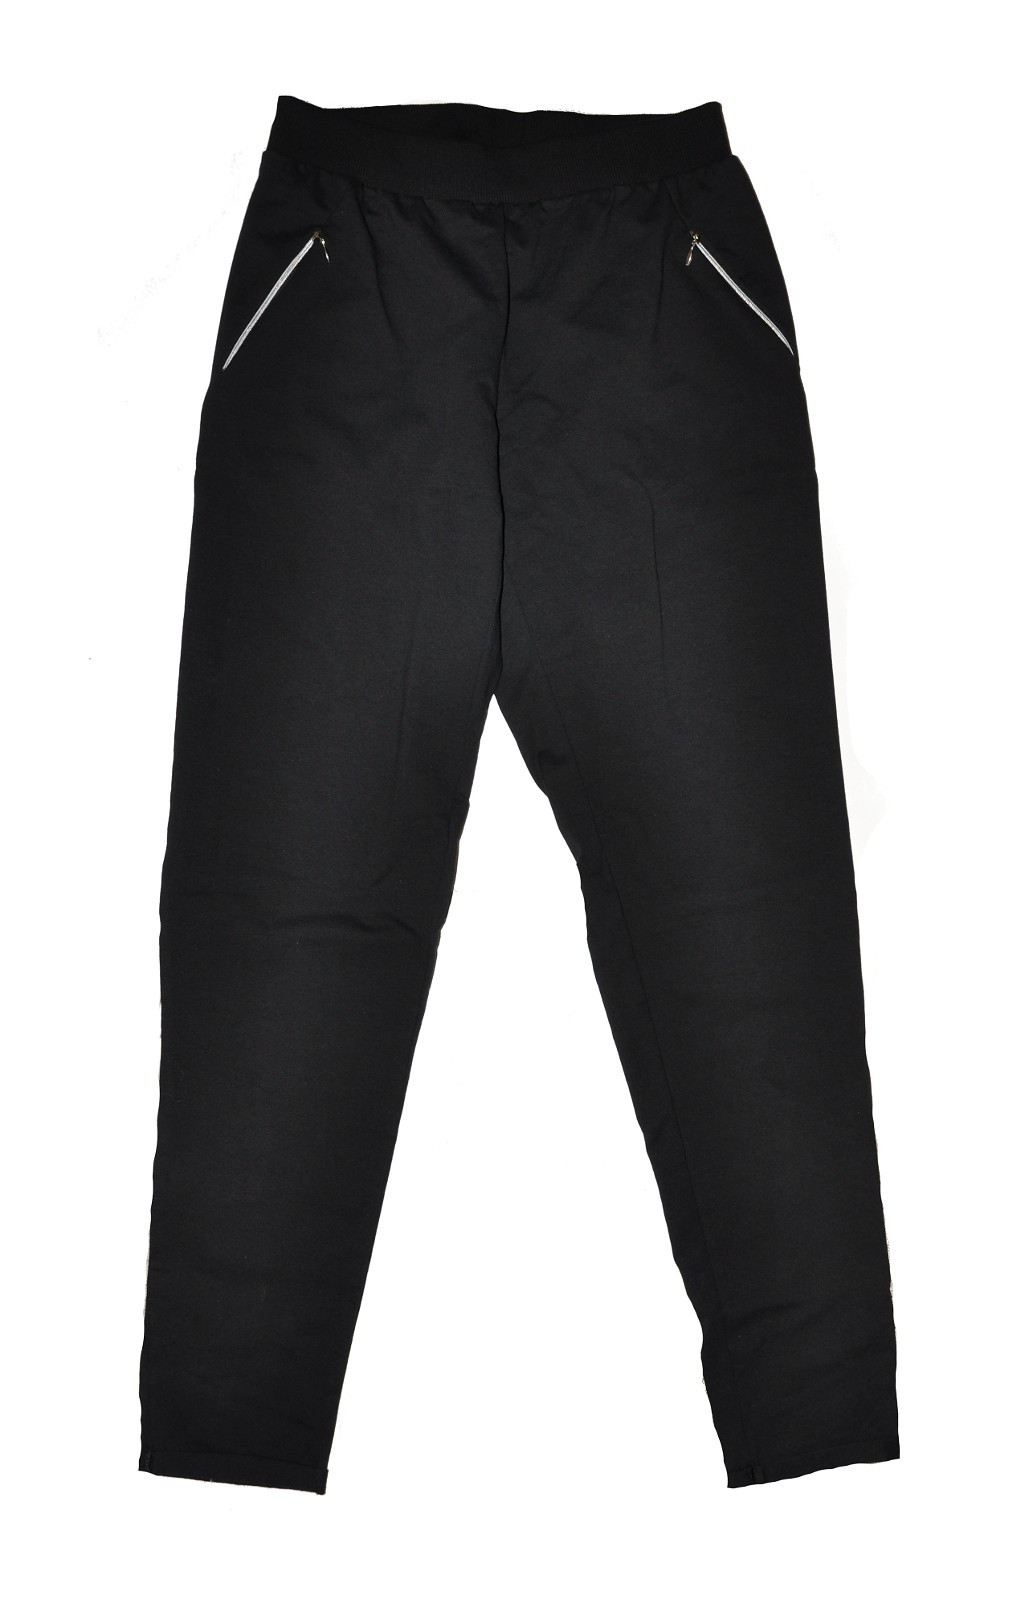 Dámské kalhoty 604 Just černé - De Lafense M